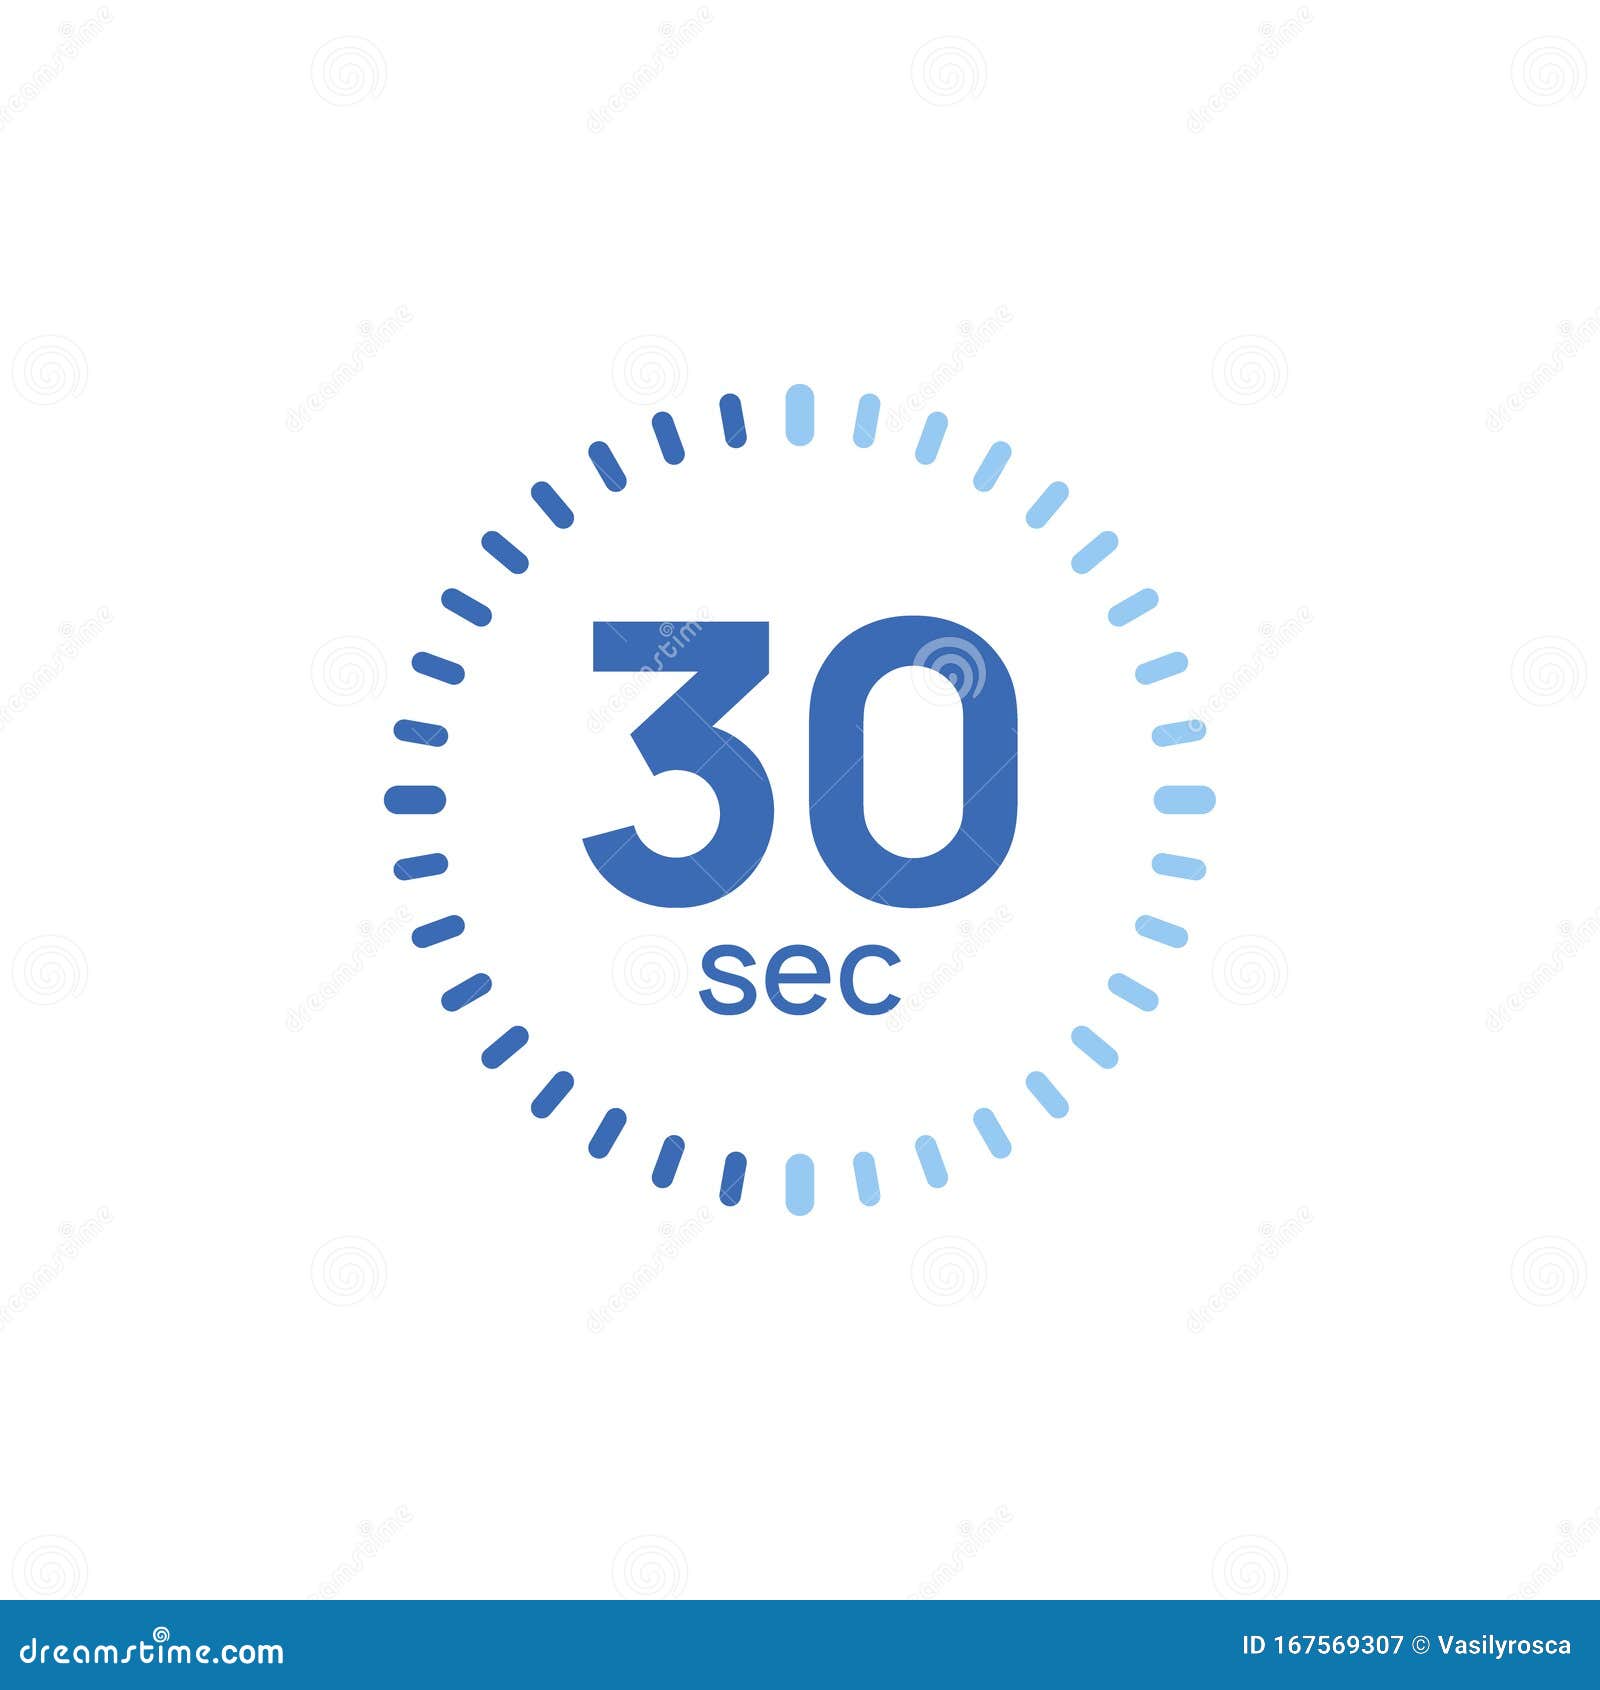 Включи минуту 2 секунды. Таймер часы 30 секунд. Таймер обратного отсчета 30 секунд. Таймер пиктограмма 30 секунд. Анимация таймер 30 секунд.